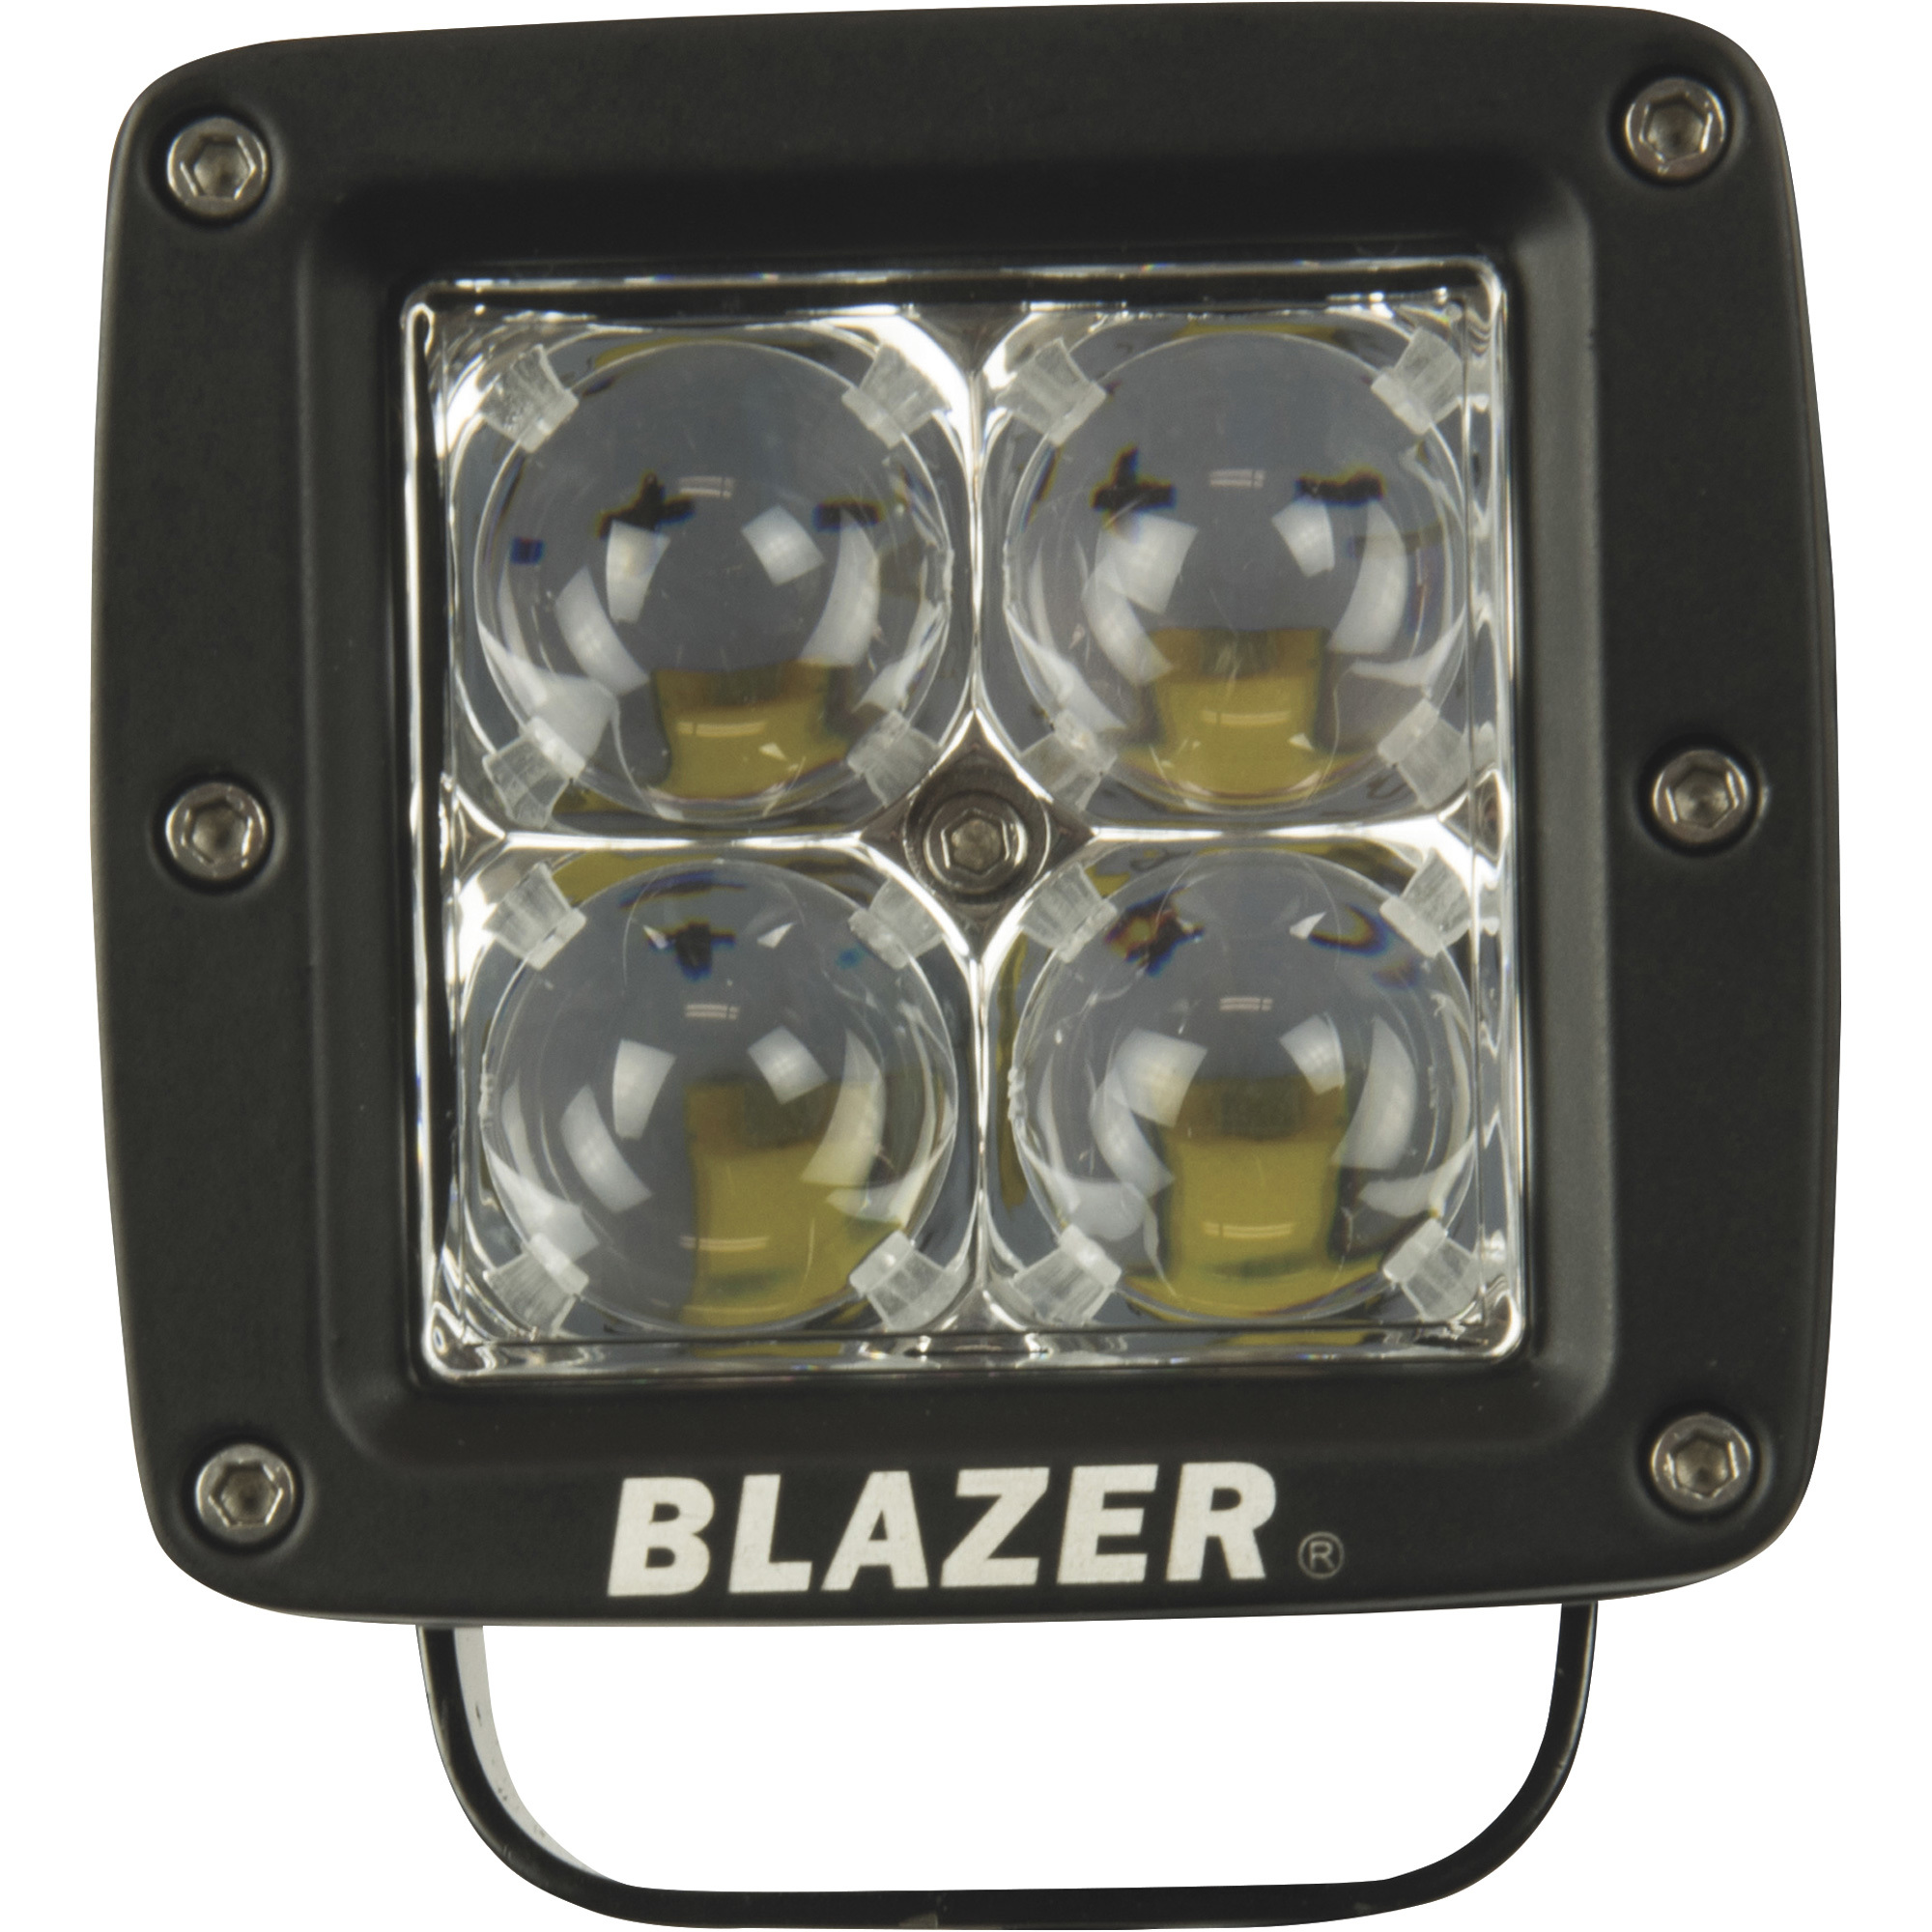 Blazer 12 Volt LED Spot Light â 3Inch Cube, 1320 Lumens, Model CWL511